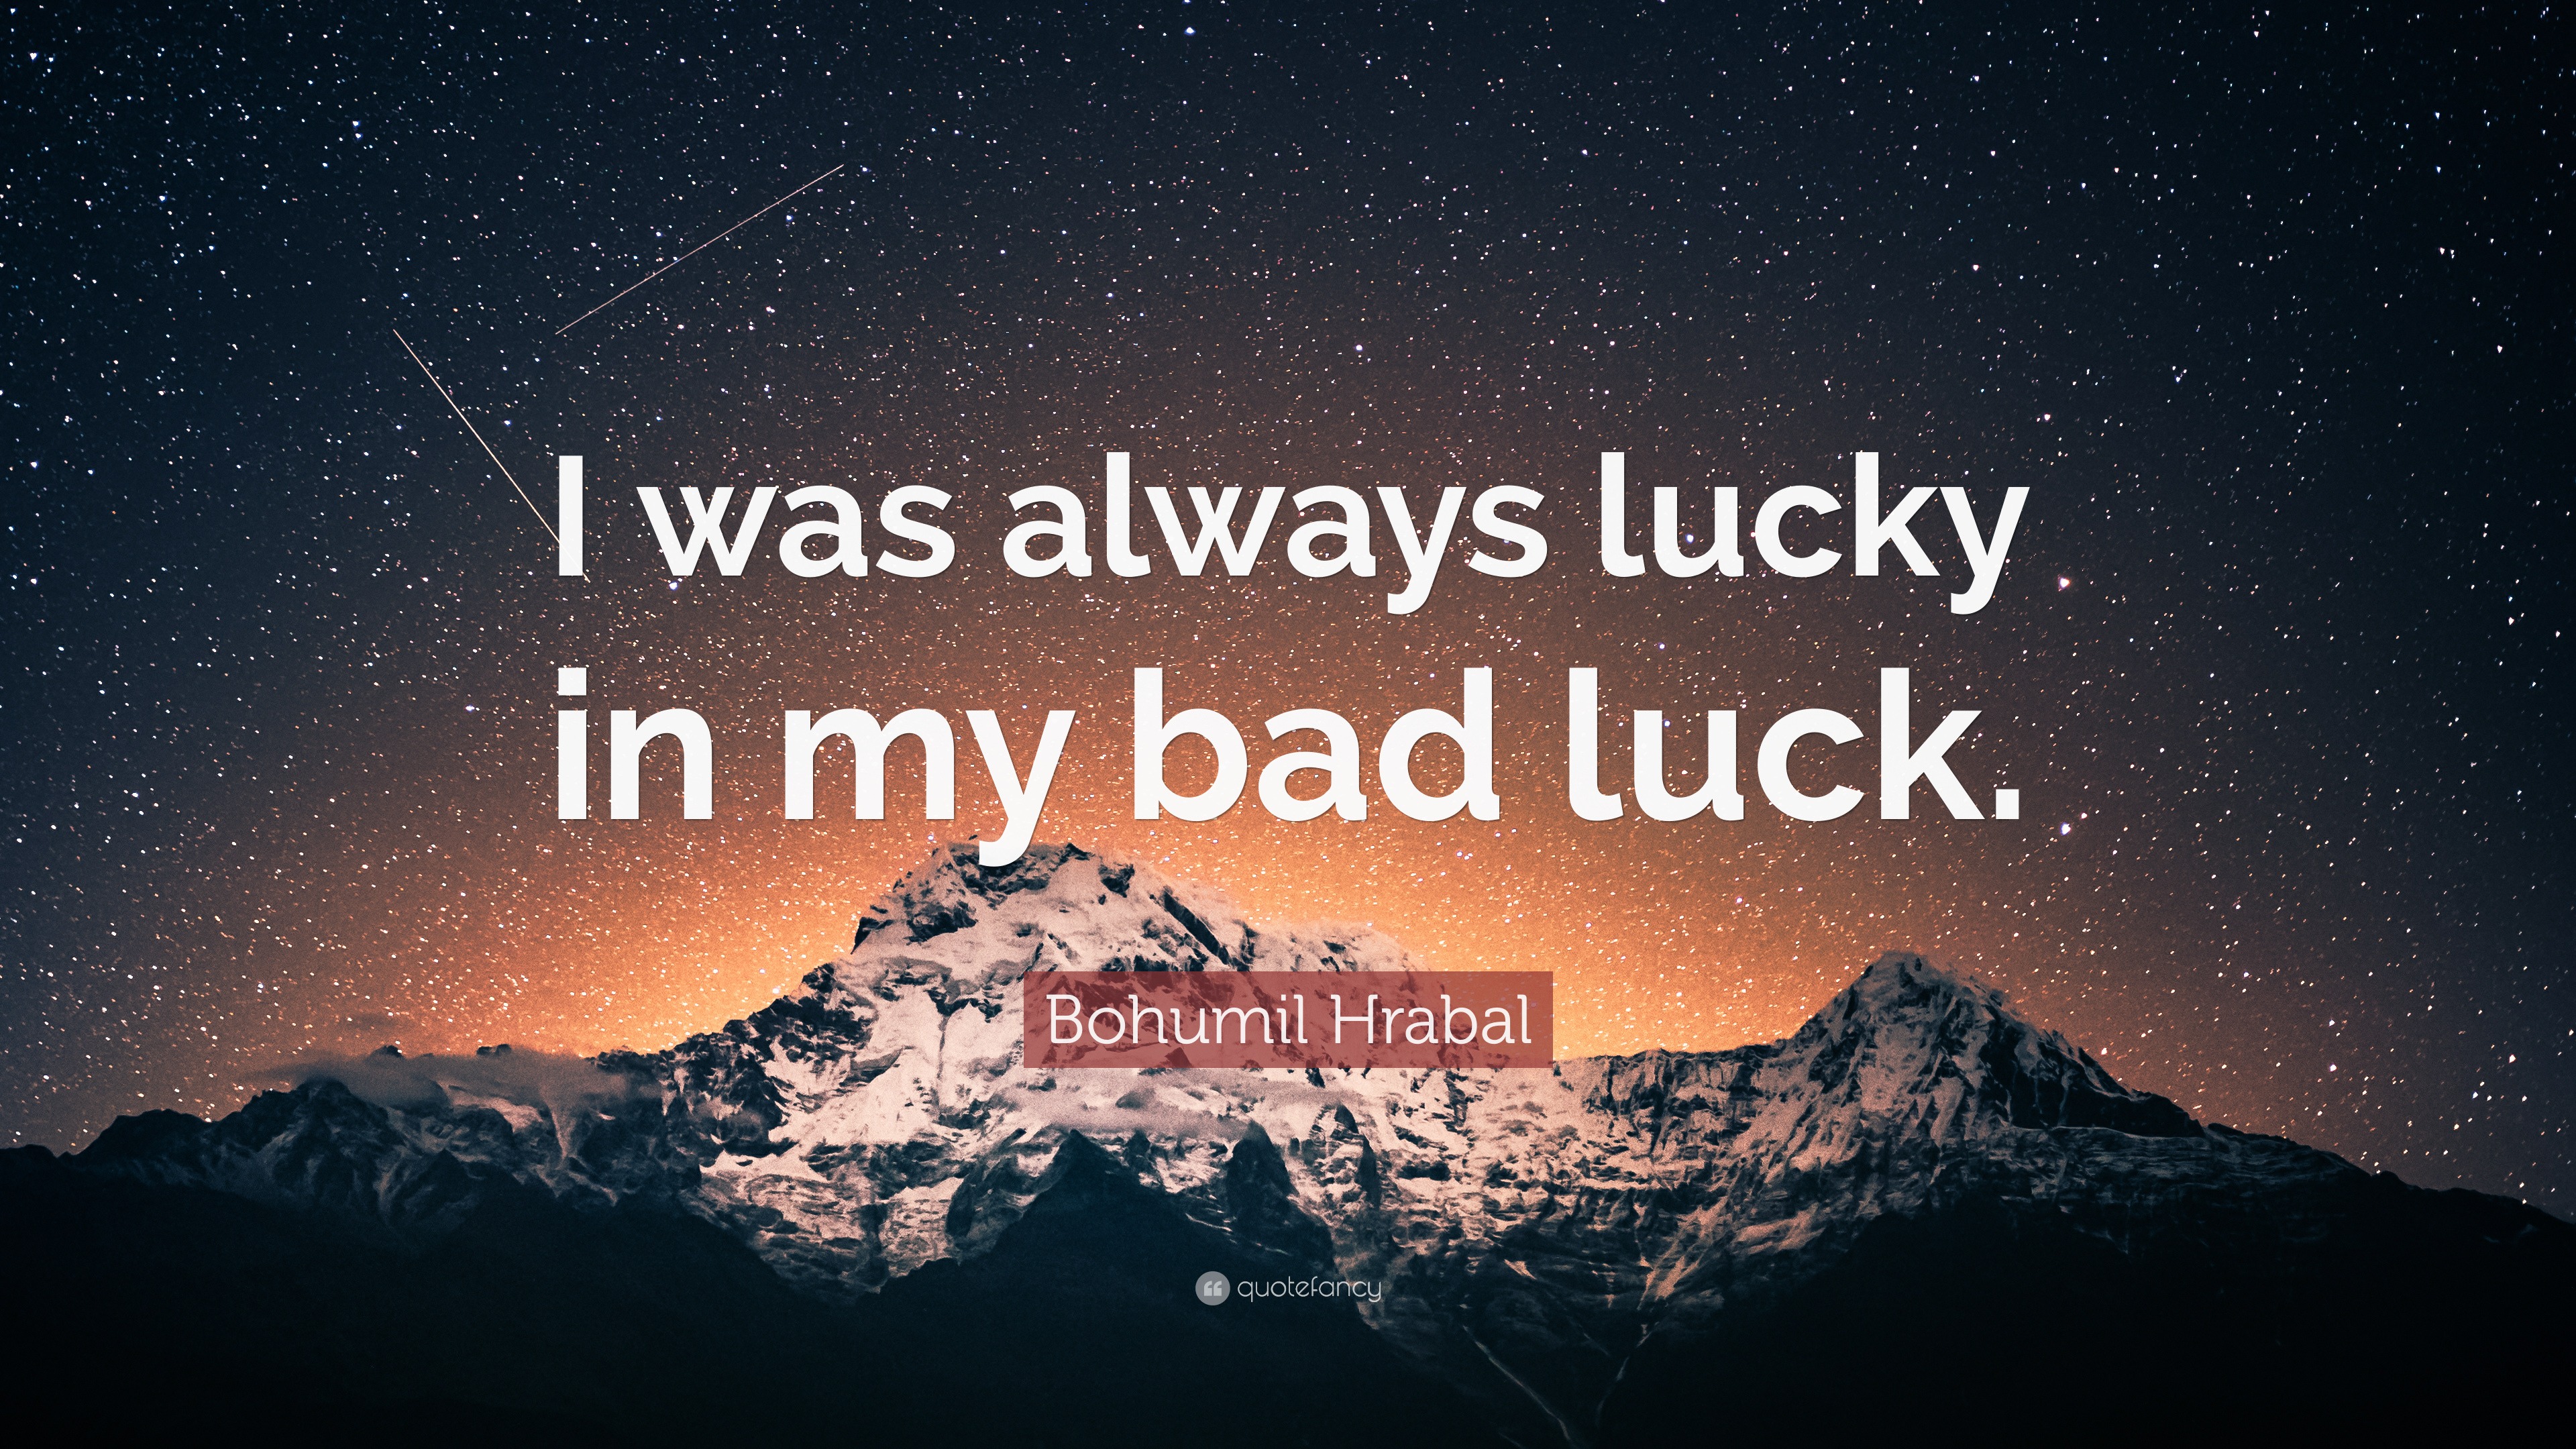 Обои Bad luck. Good luck обои. Sayings about luck. Обои темная тема Bad luck. Always luck